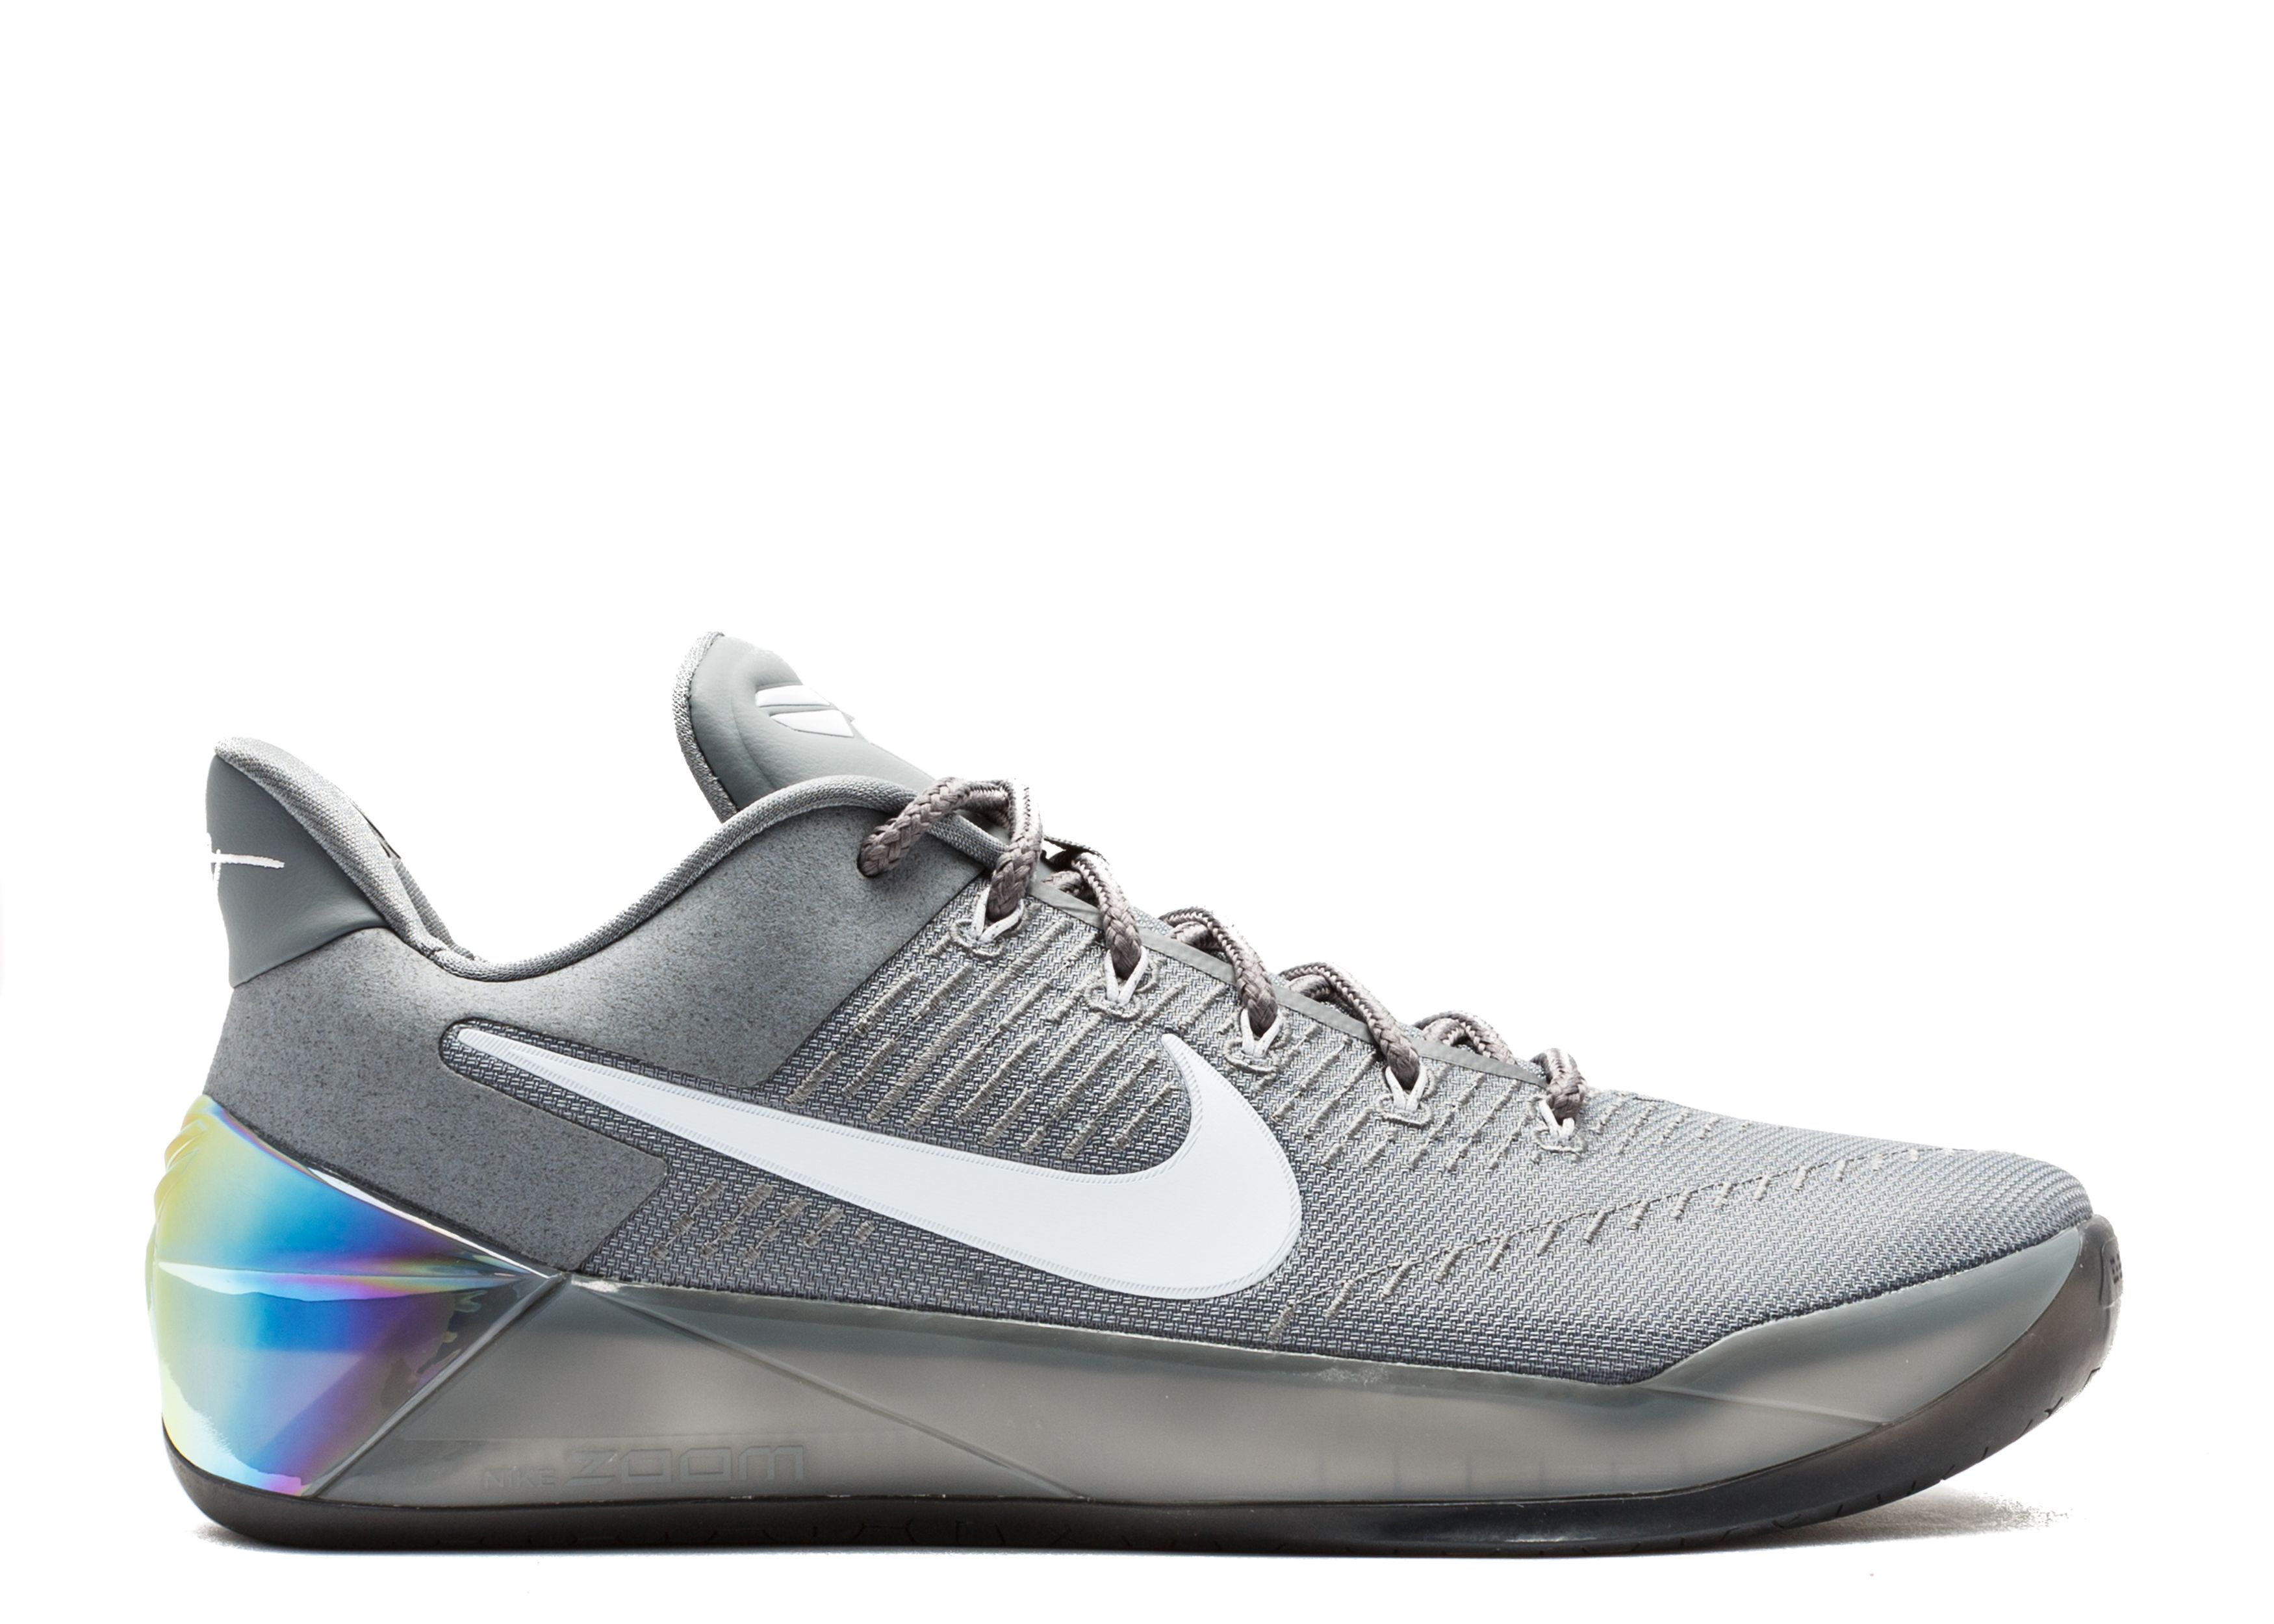 Kobe A.D. 'Cool Grey' - Nike - 852425 010 - cool grey/white-black ...